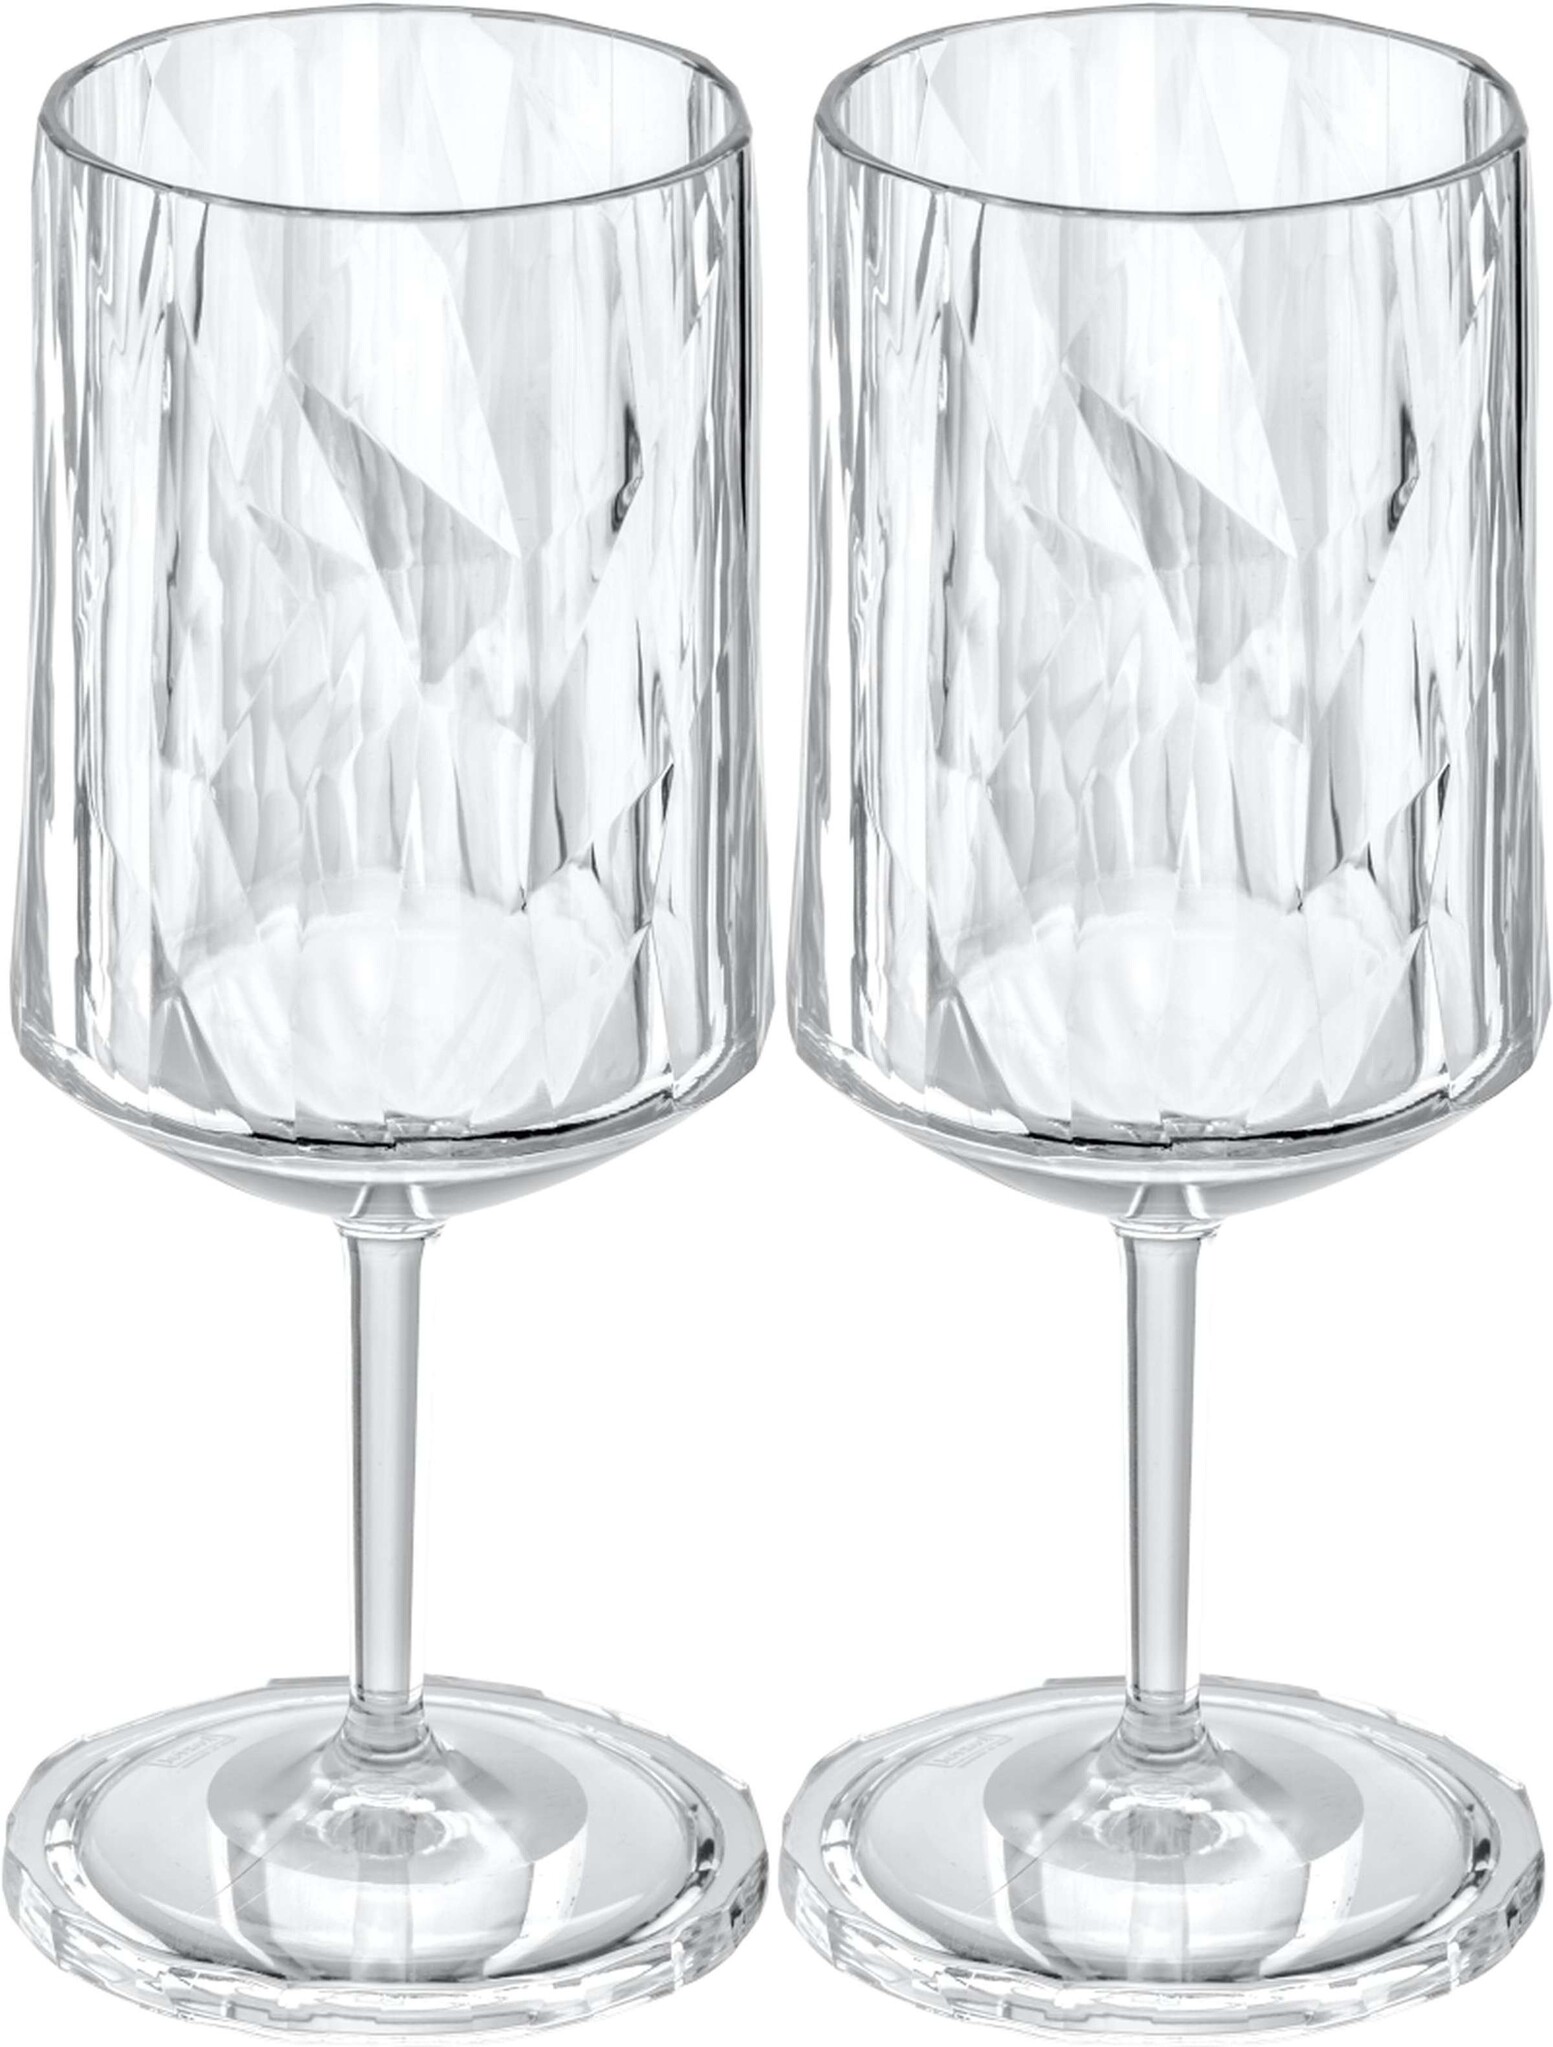 Koziol Superglas Club No. 04 Wijn Glas 300 ml Set van 2 Stuks